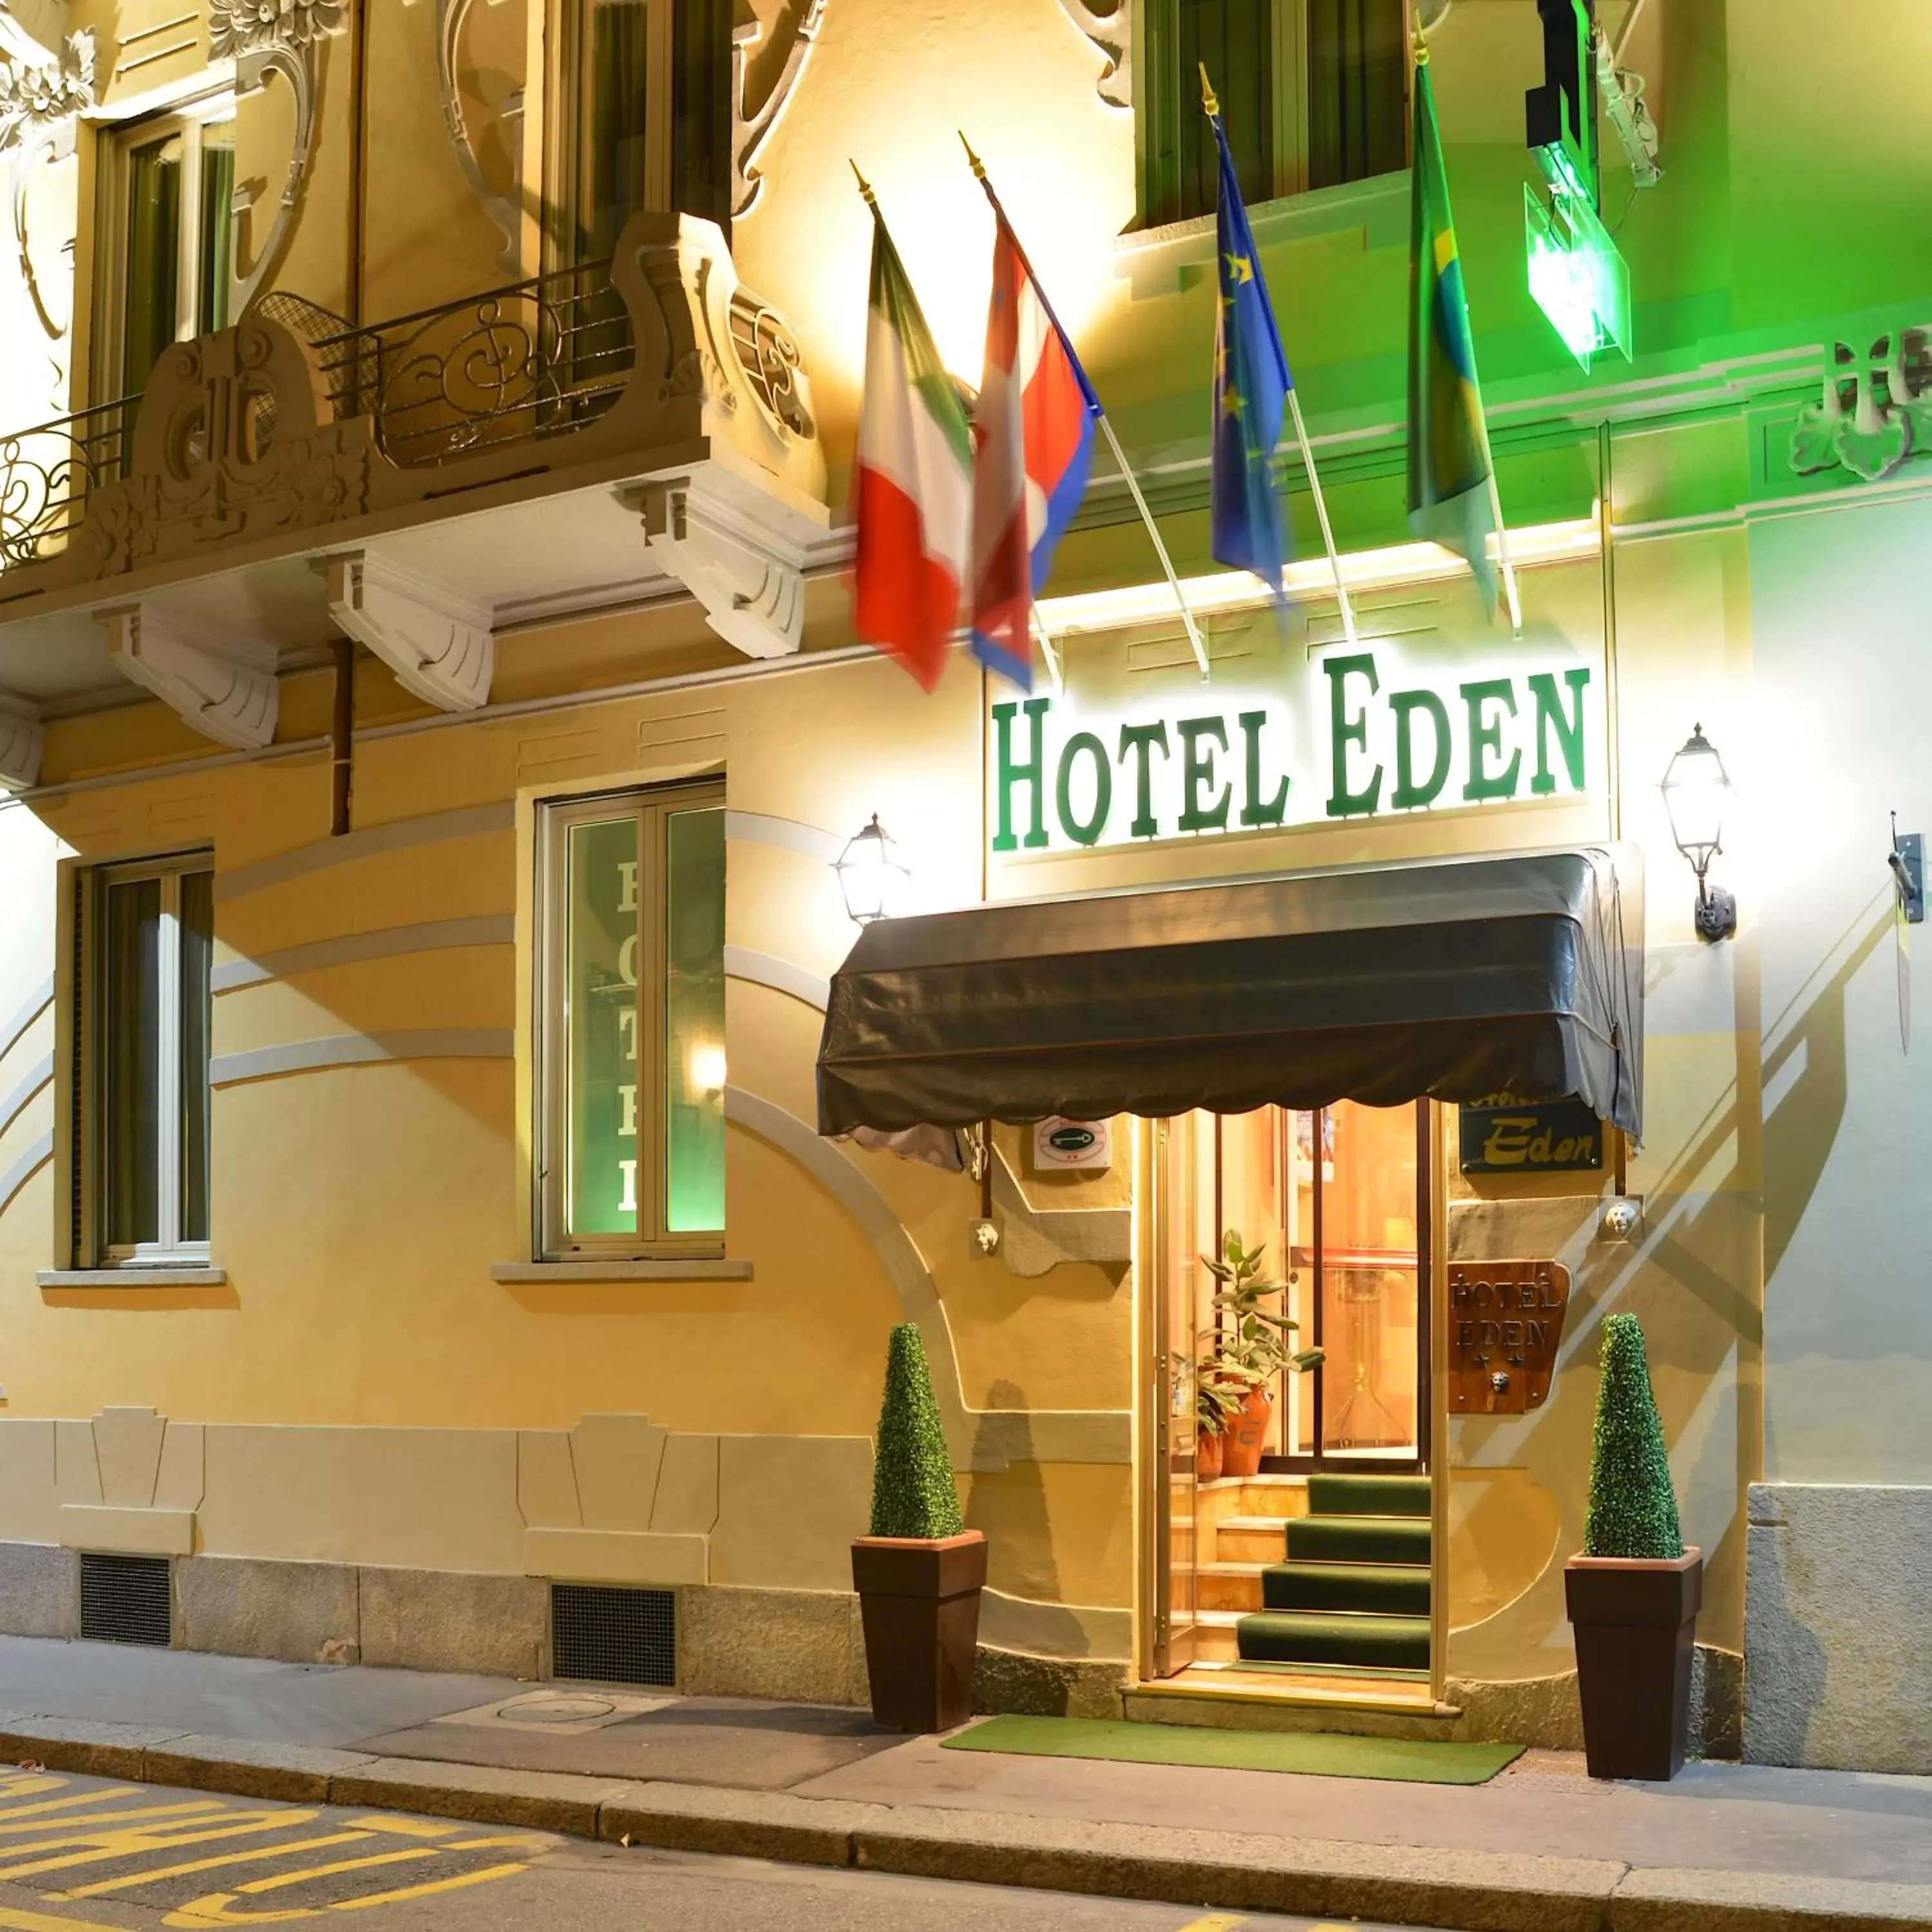 Facade/entrance in Hotel Eden